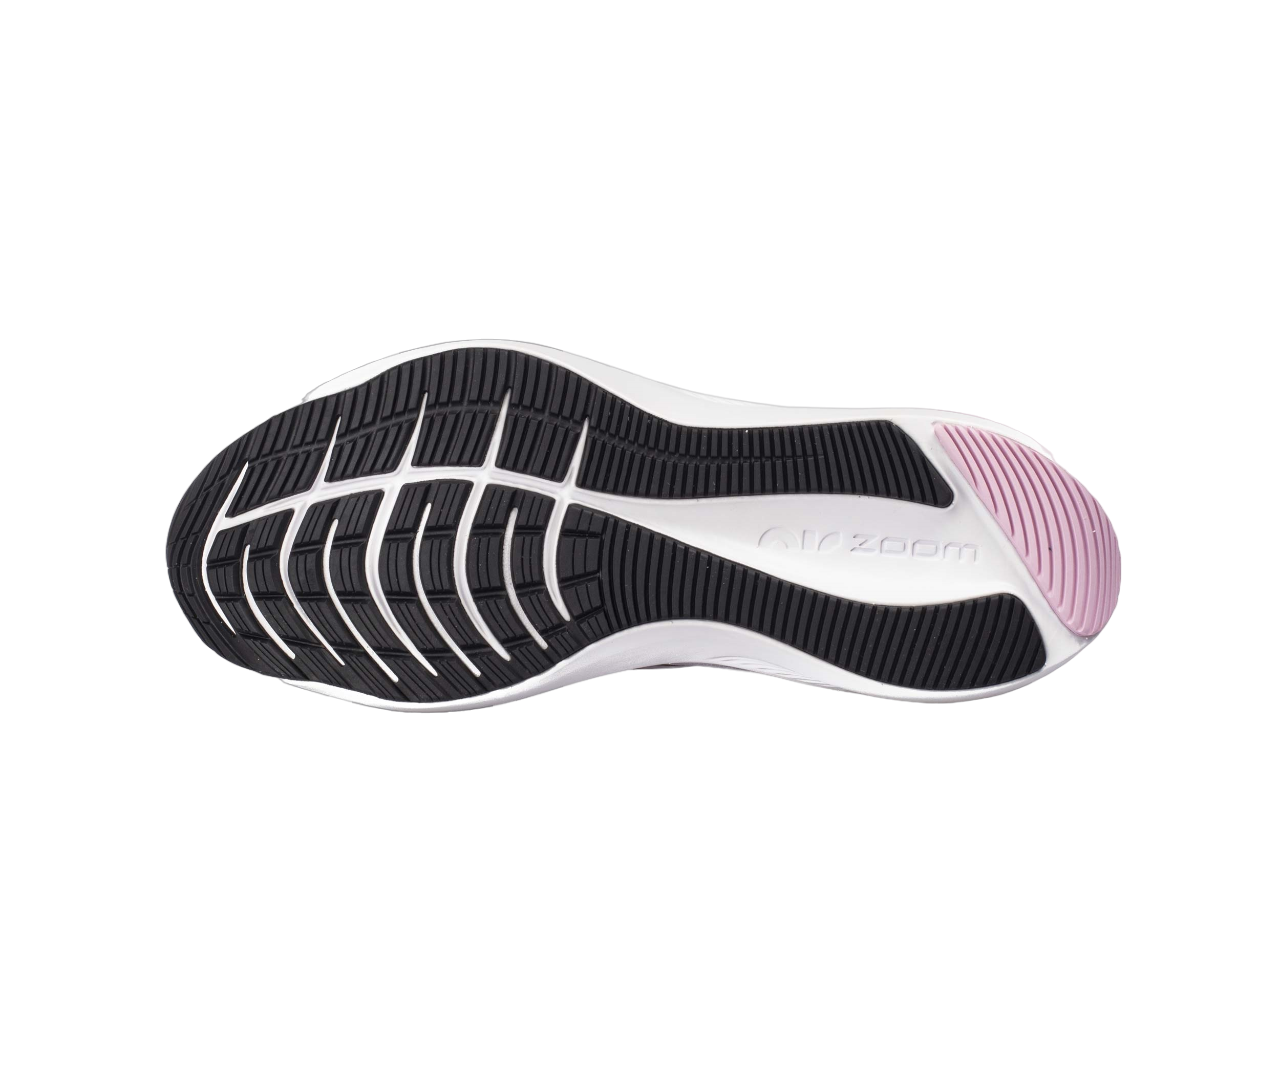 Nike scarpa da corsa da donna Zoom Winflo 7 CJ0302 501 violetto